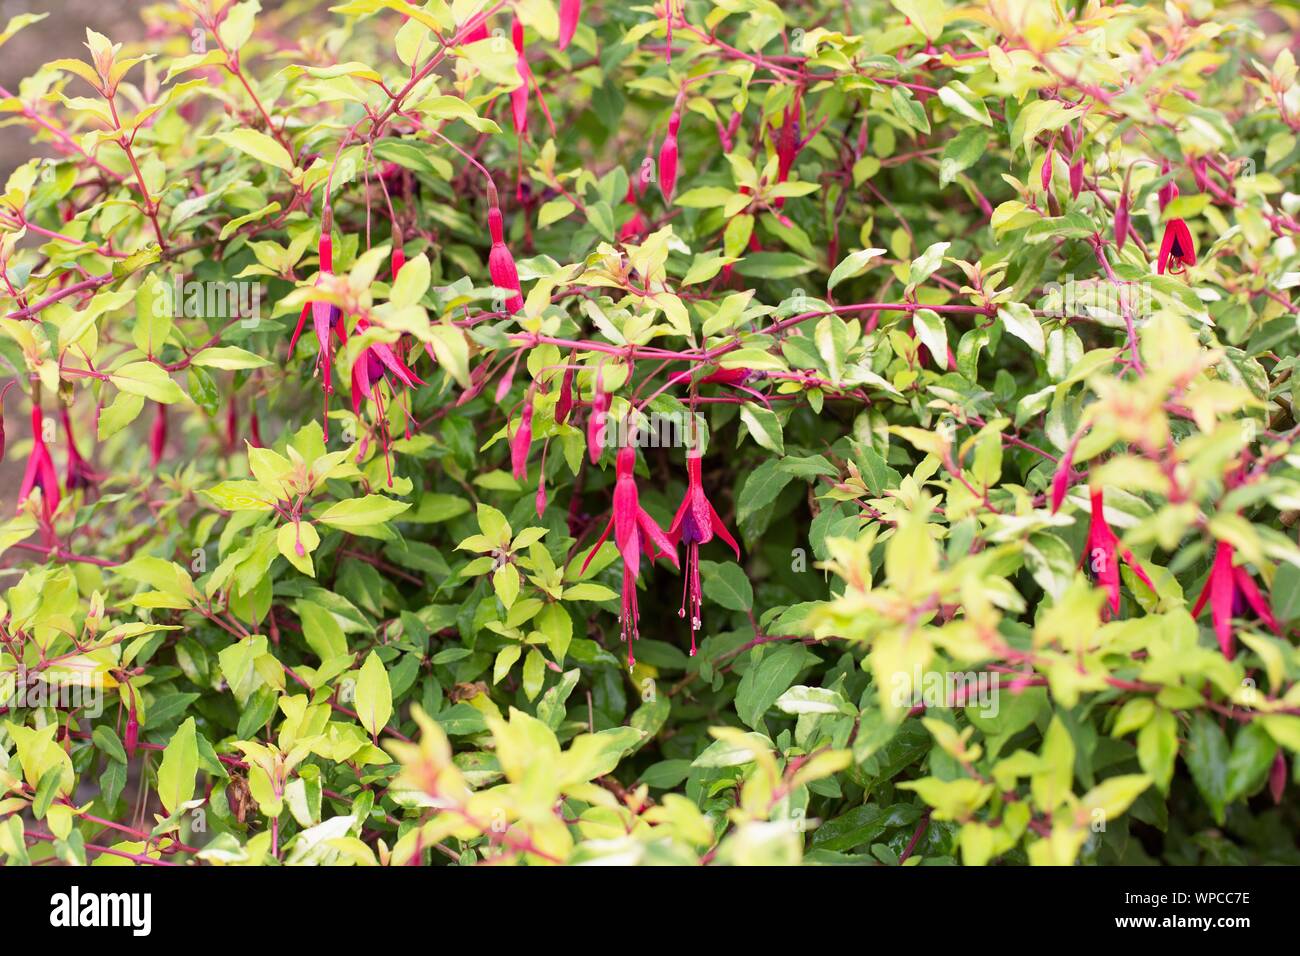 Fuchsia magellanica ‘Aurea’. Stock Photo